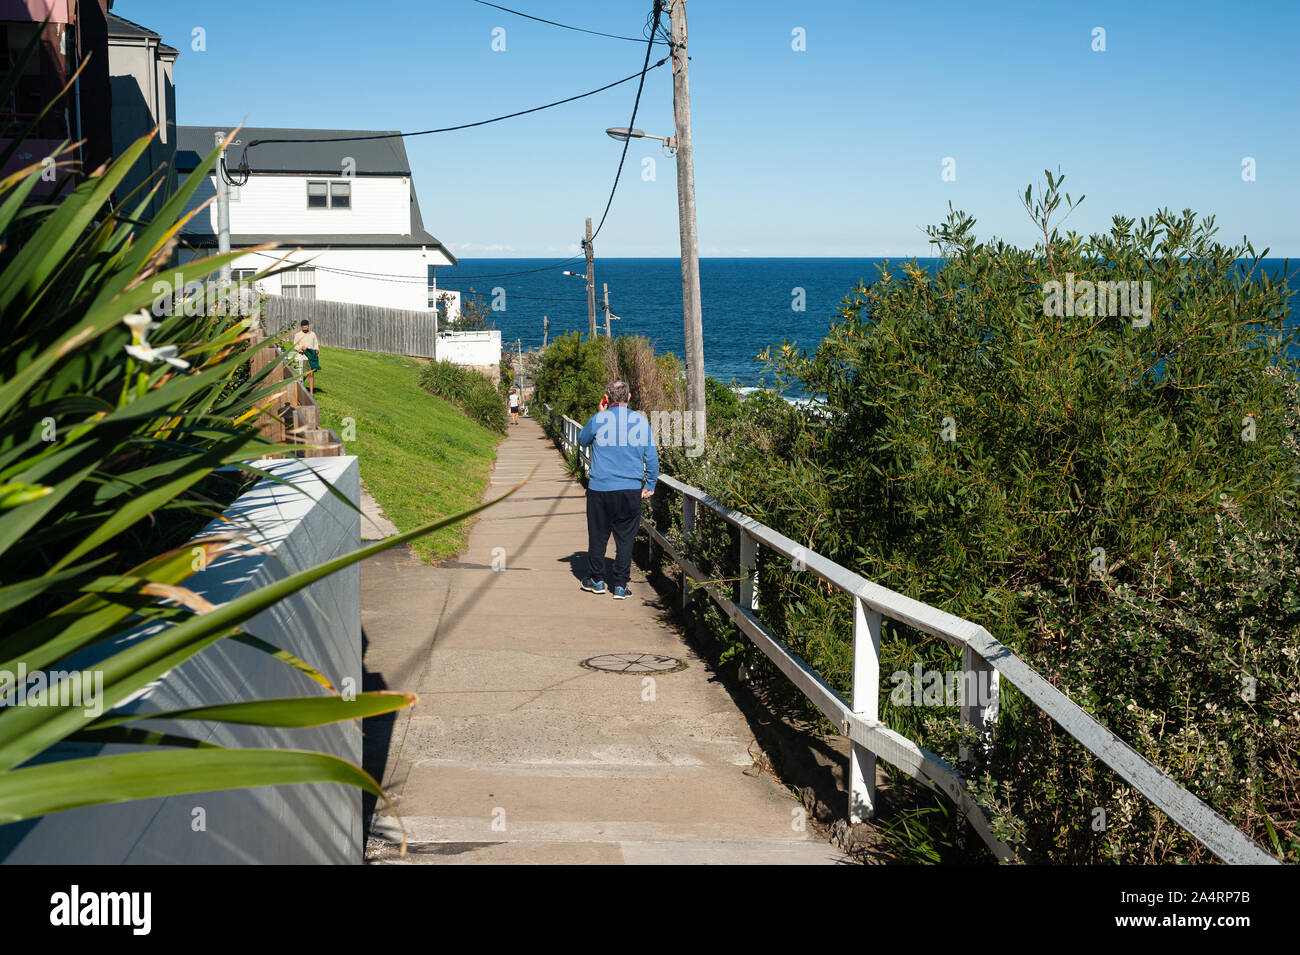 24.09.2019, Sydney, New South Wales, Australia - un hombre camina por casas residenciales a lo largo de la Bondi de Coogee caminar con el mar al fondo. Foto de stock